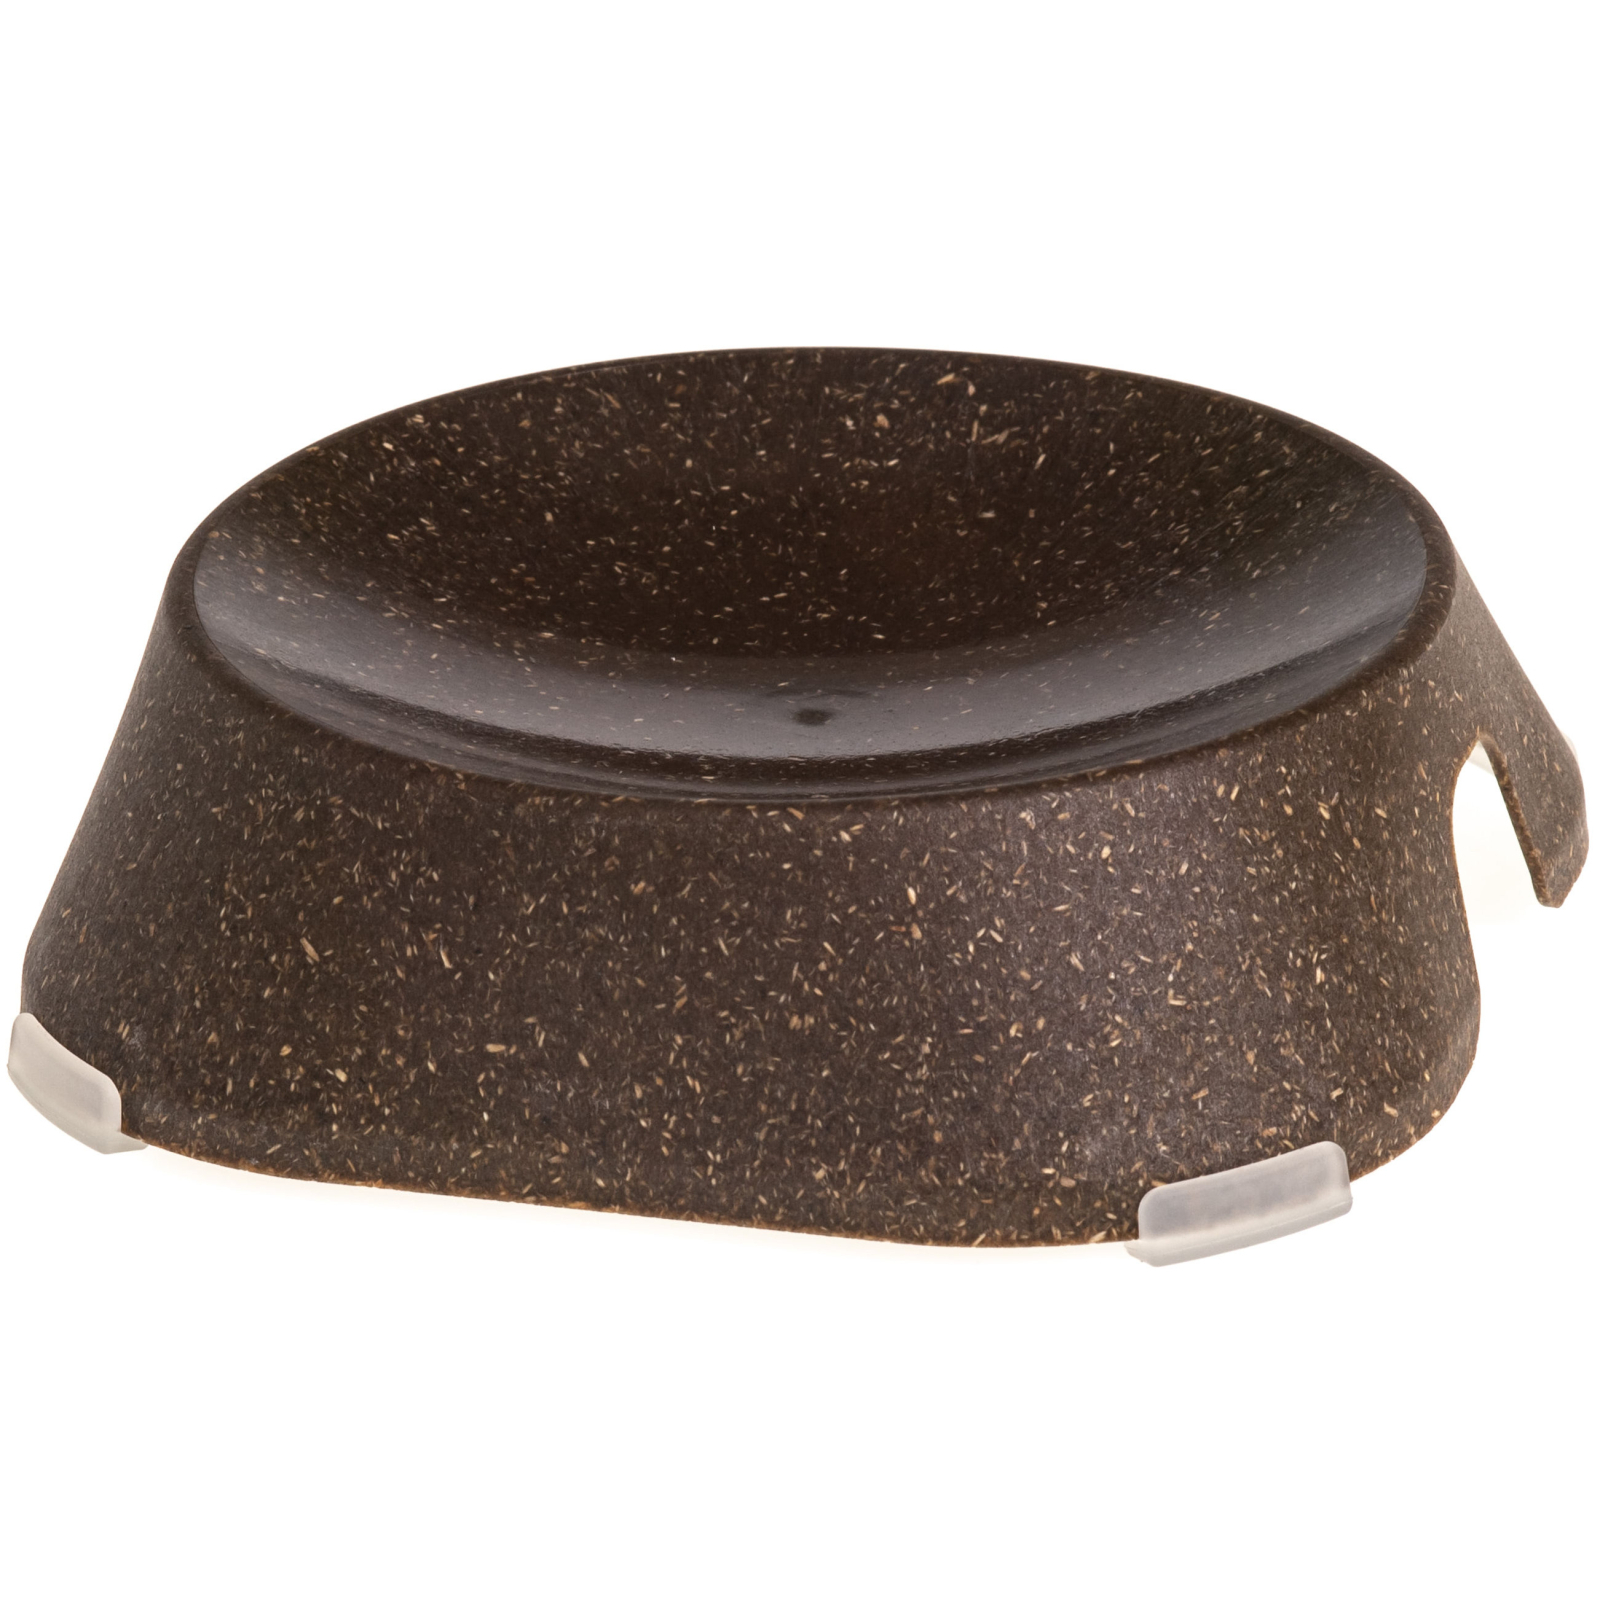 Универсальная посуда для животных Fiboo ECO Flat Bowl Плоская миска с антискользящими накладками (FIB0002)